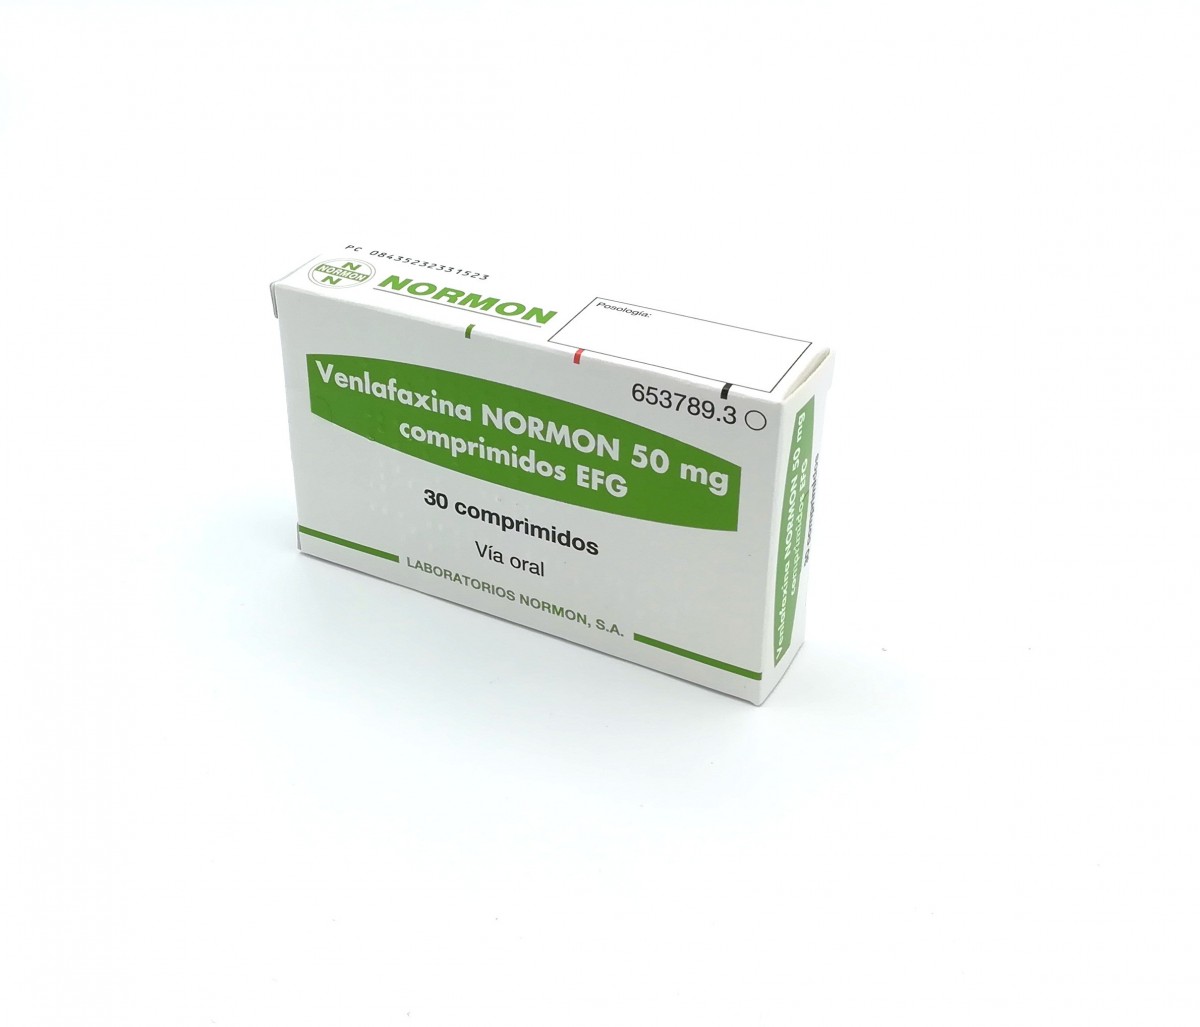 VENLAFAXINA NORMON 50 mg COMPRIMIDOS EFG , 30 comprimidos fotografía del envase.